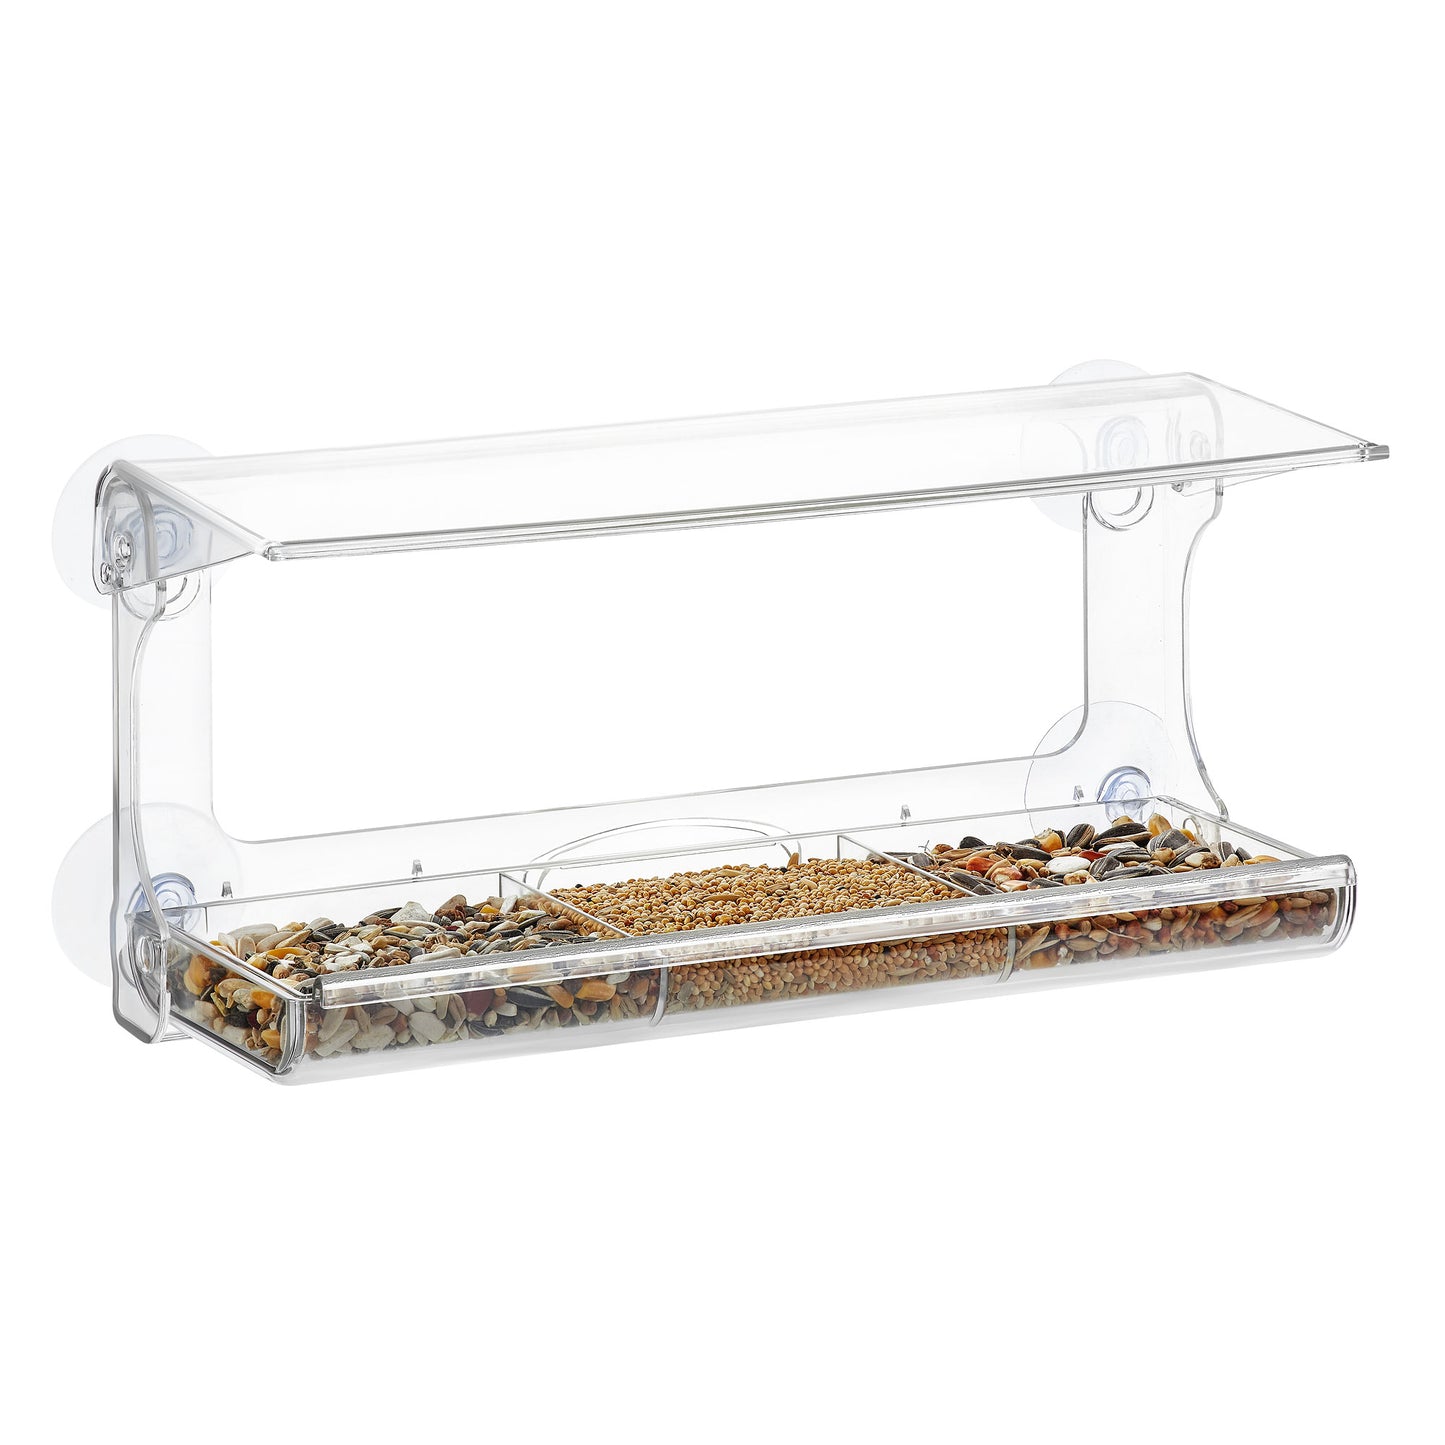 PALMAT - Mangeoire de Fenêtre pour Oiseaux - Transparente avec Plateau Amovible XL (30 cm de long)